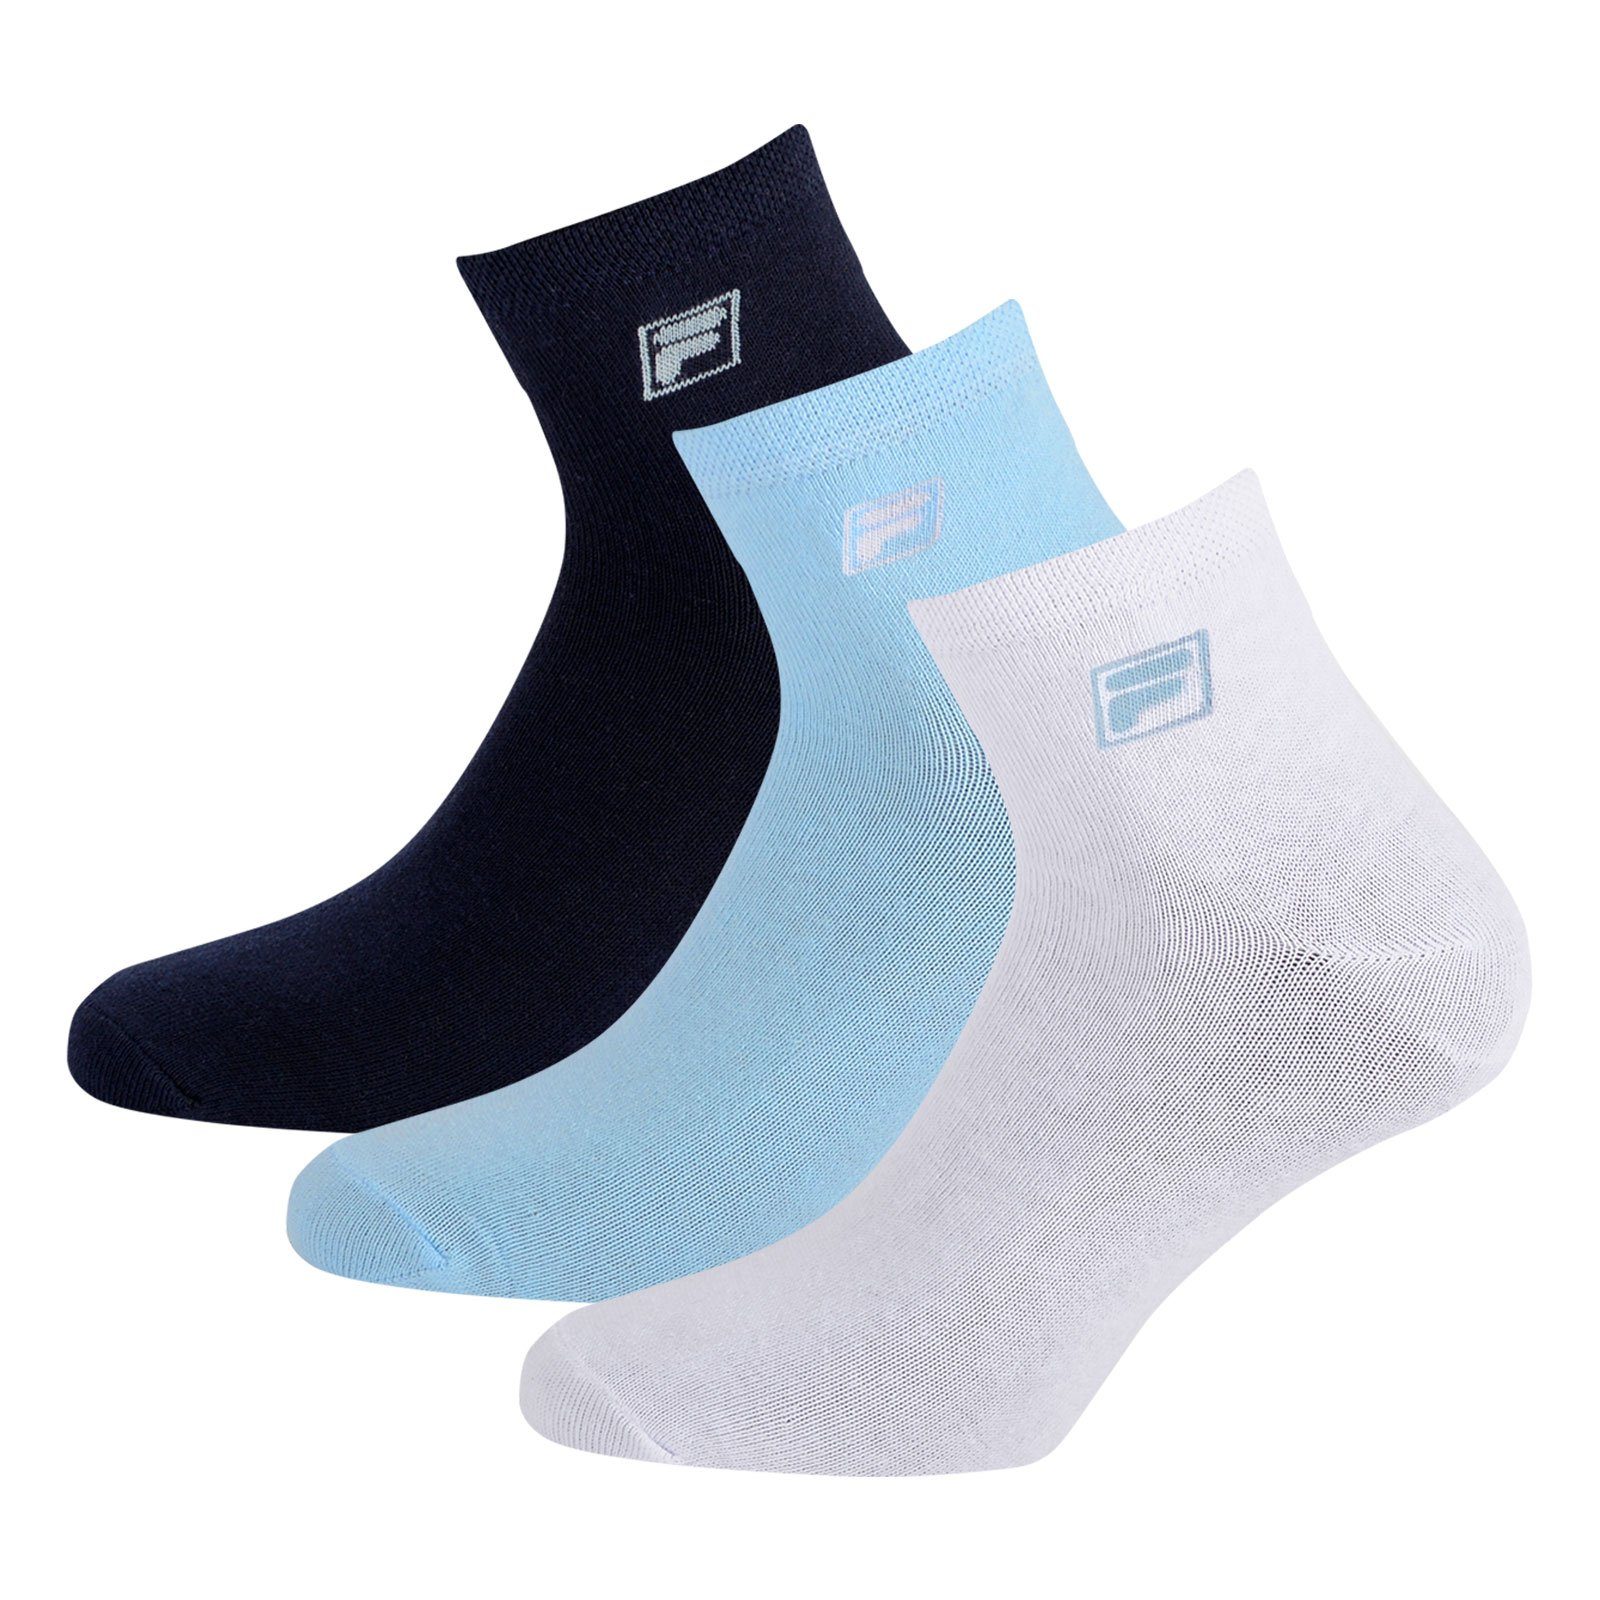 Fila Sportsocken white / Socken Piquebund mit (12-Paar) blue navy / 821 light elastischem Quarter